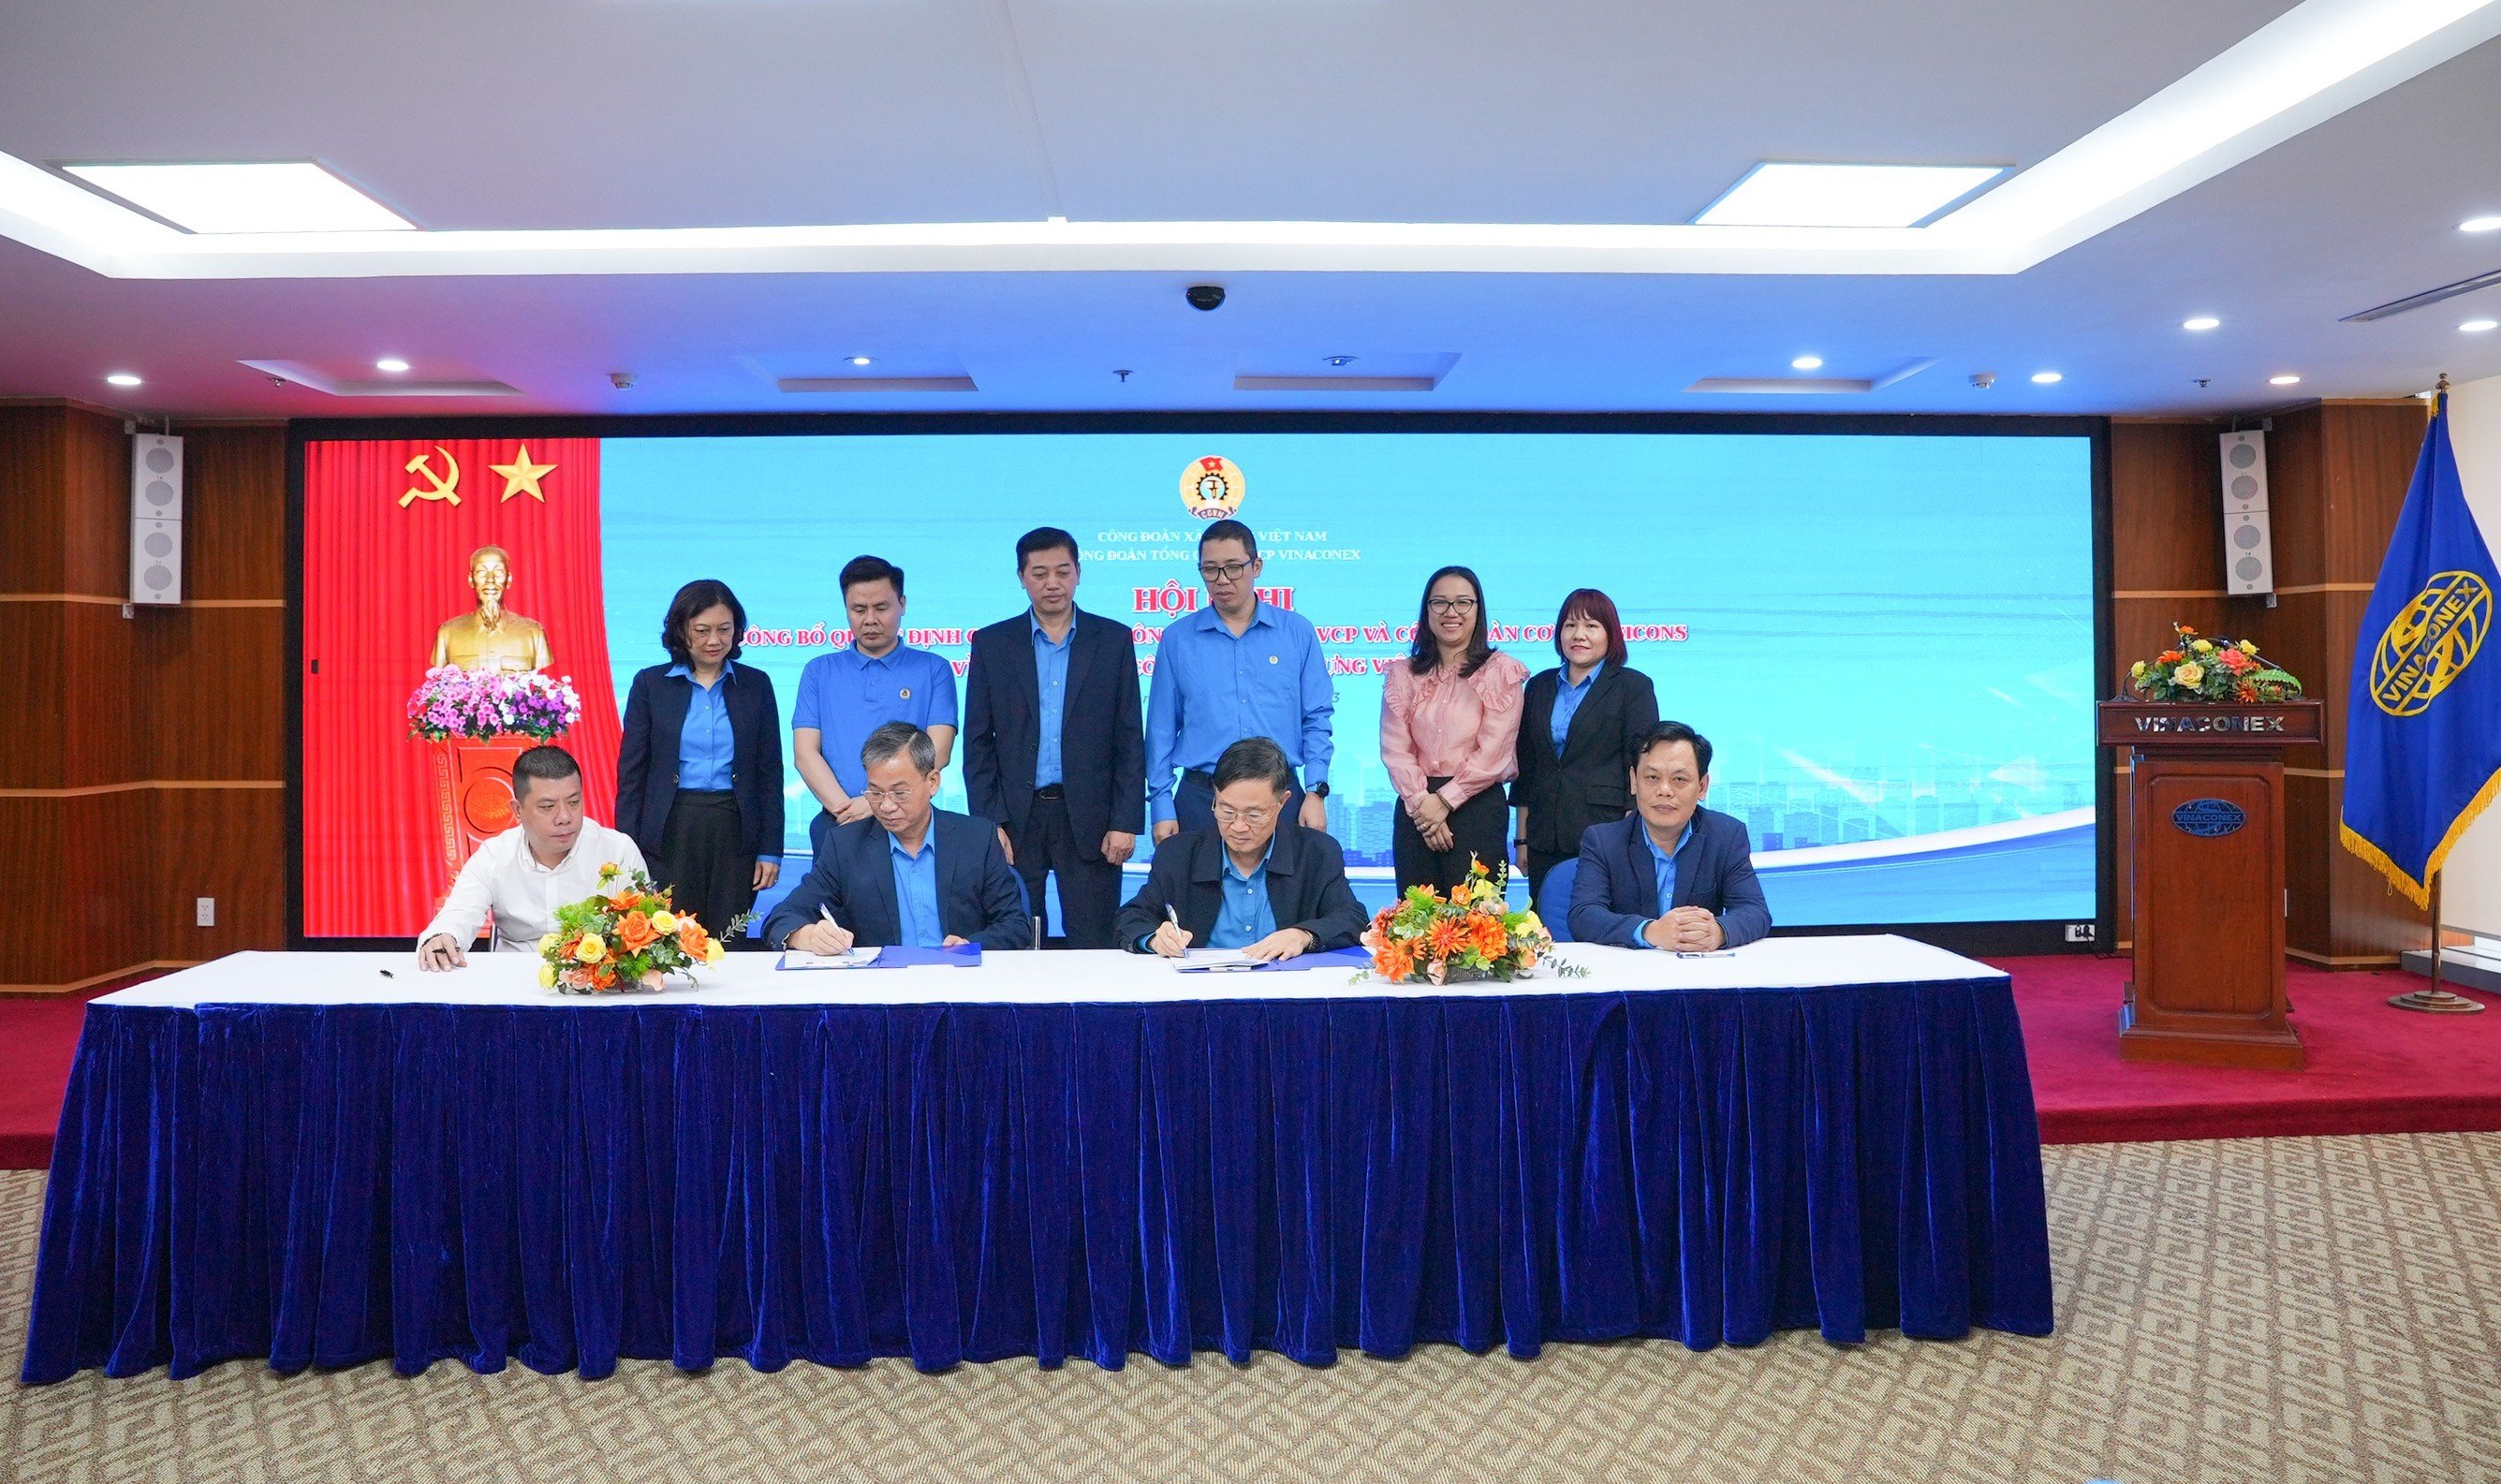 Hội nghị công bố quyết định chuyển giao công đoàn cơ sở VCP và VISICONS về trực thuộc Công đoàn Xây dựng Việt Nam